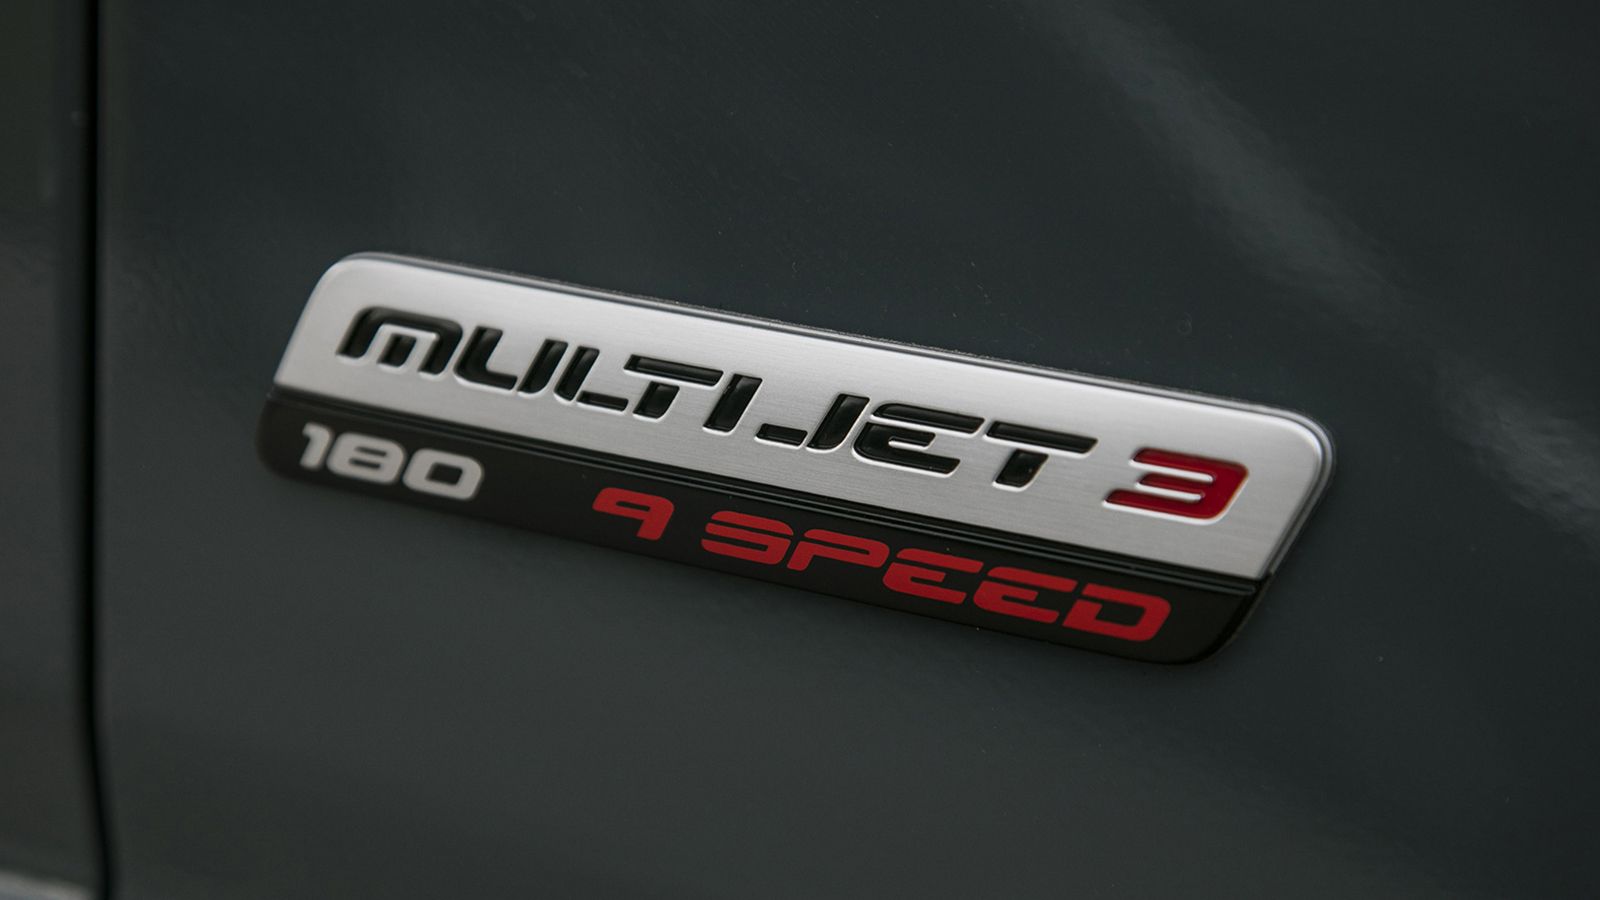 Ο νέος MultiJet 3 πετρελαιοκινητήρας είναι διαθέσιμος σε εκδόσεις με ισχύ από 120 – 180 ίππους και μέγιστη ροπή έως 450 Nm ενώ προσφέρει μειωμένη κατά 7% κατανάλωση σε σχέση με τον προκάτοχο του